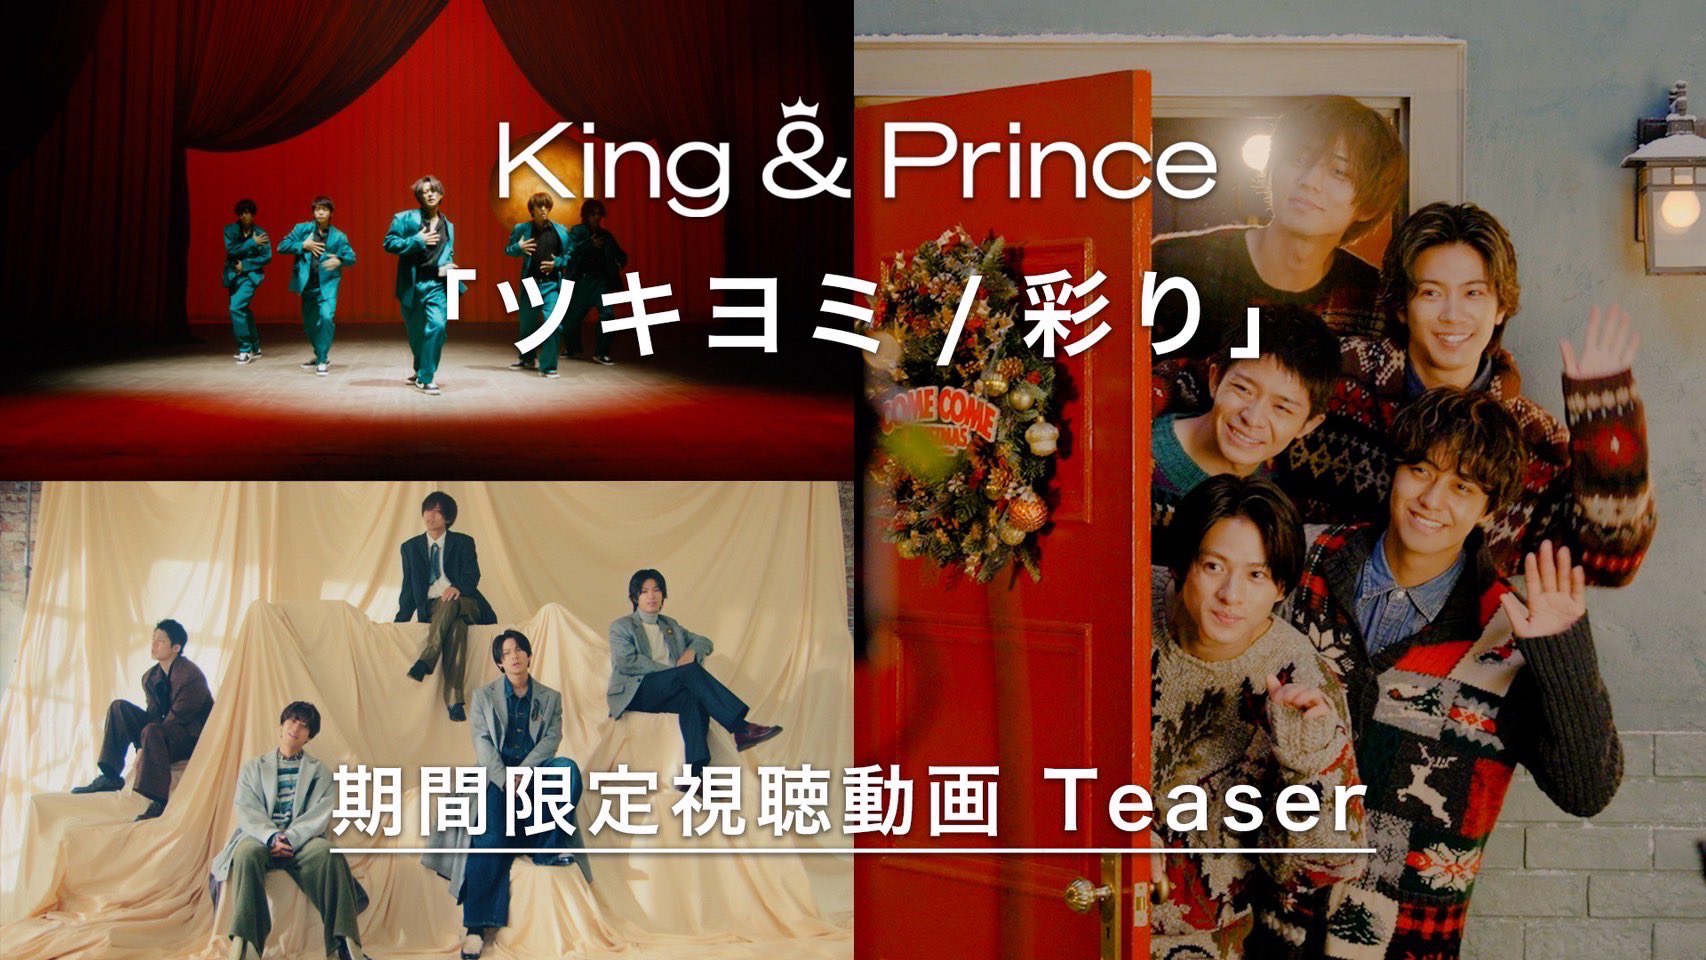 King & Prince on X: 